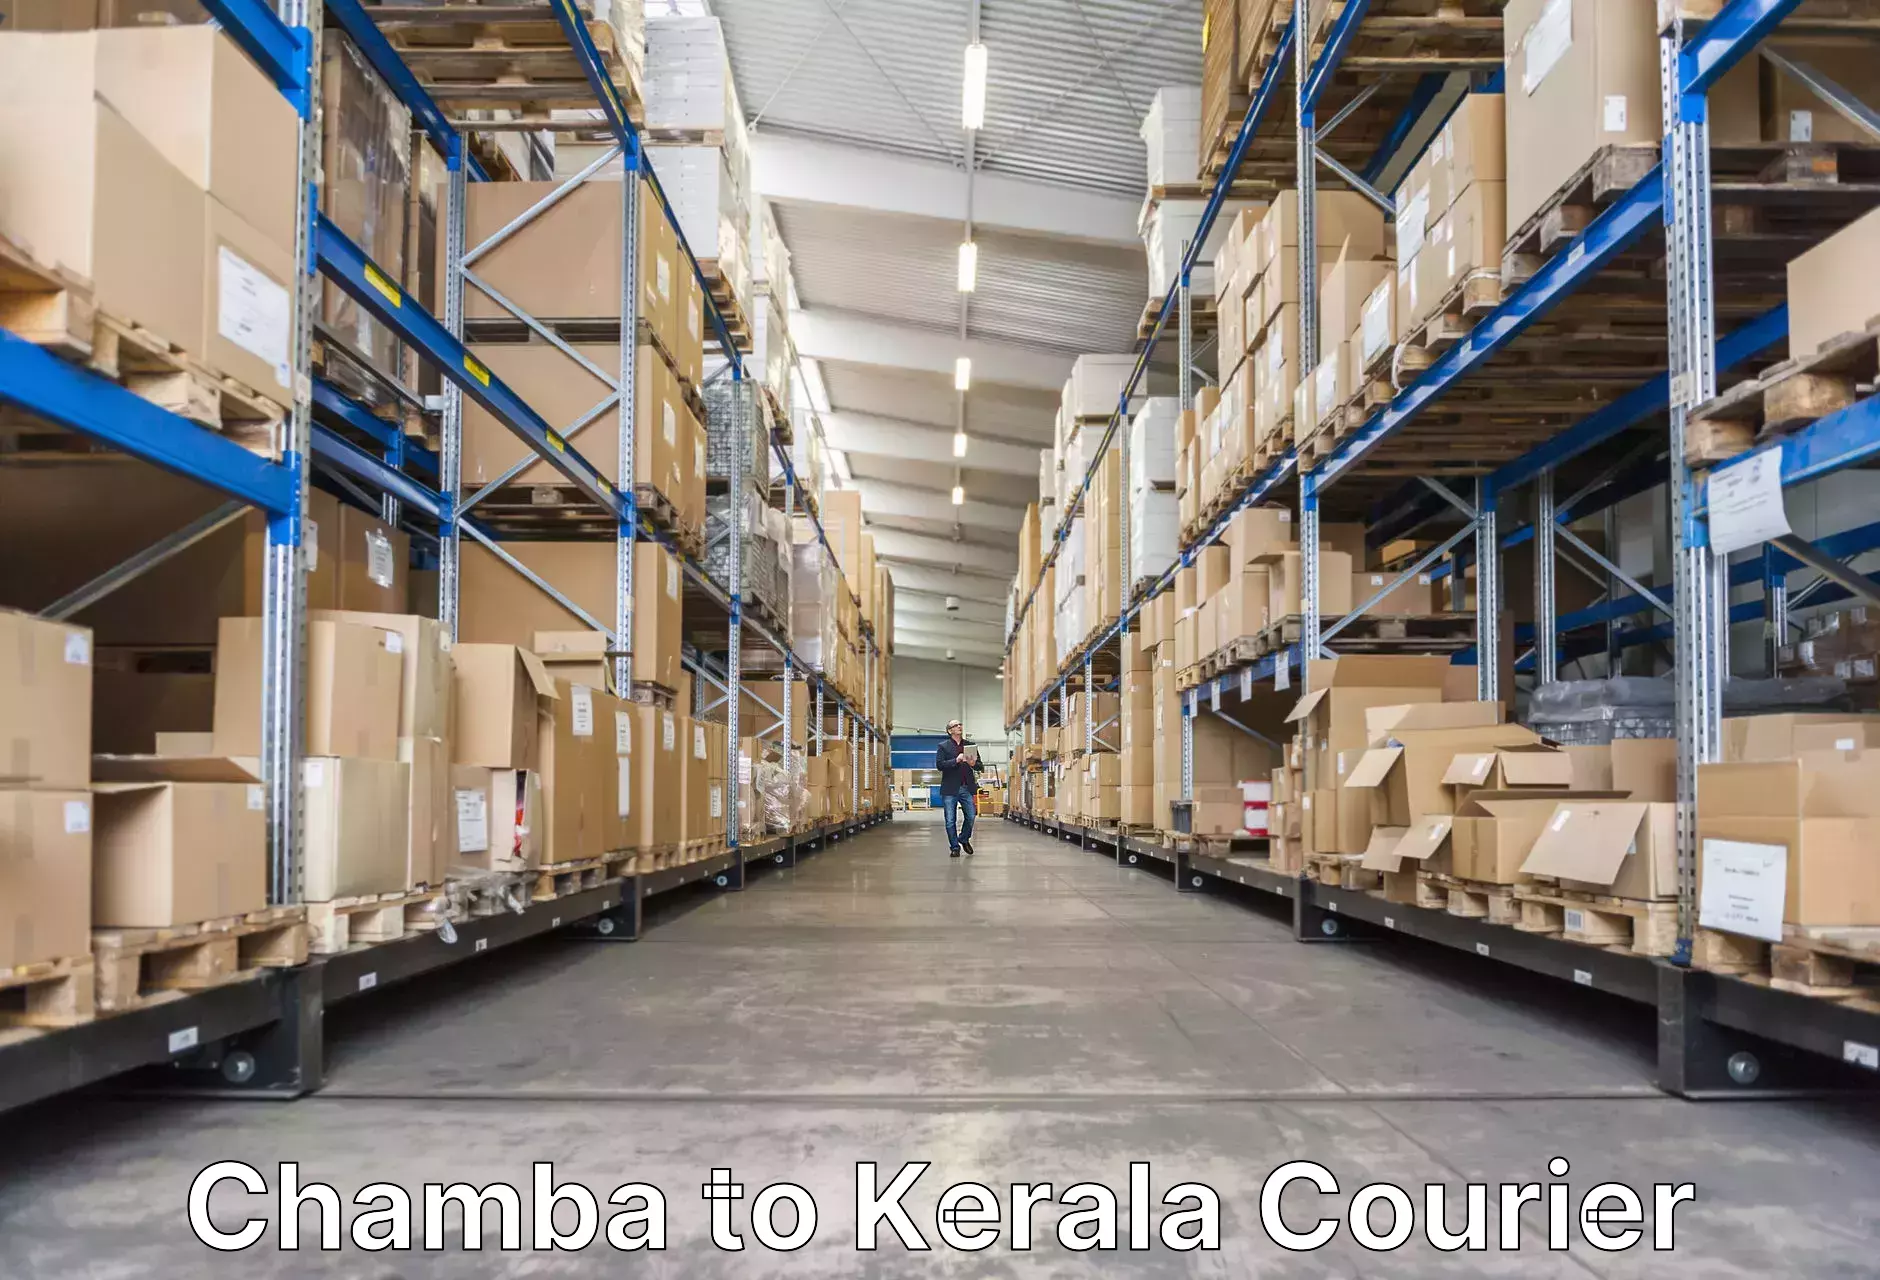 Luggage transport company Chamba to Rajamudy